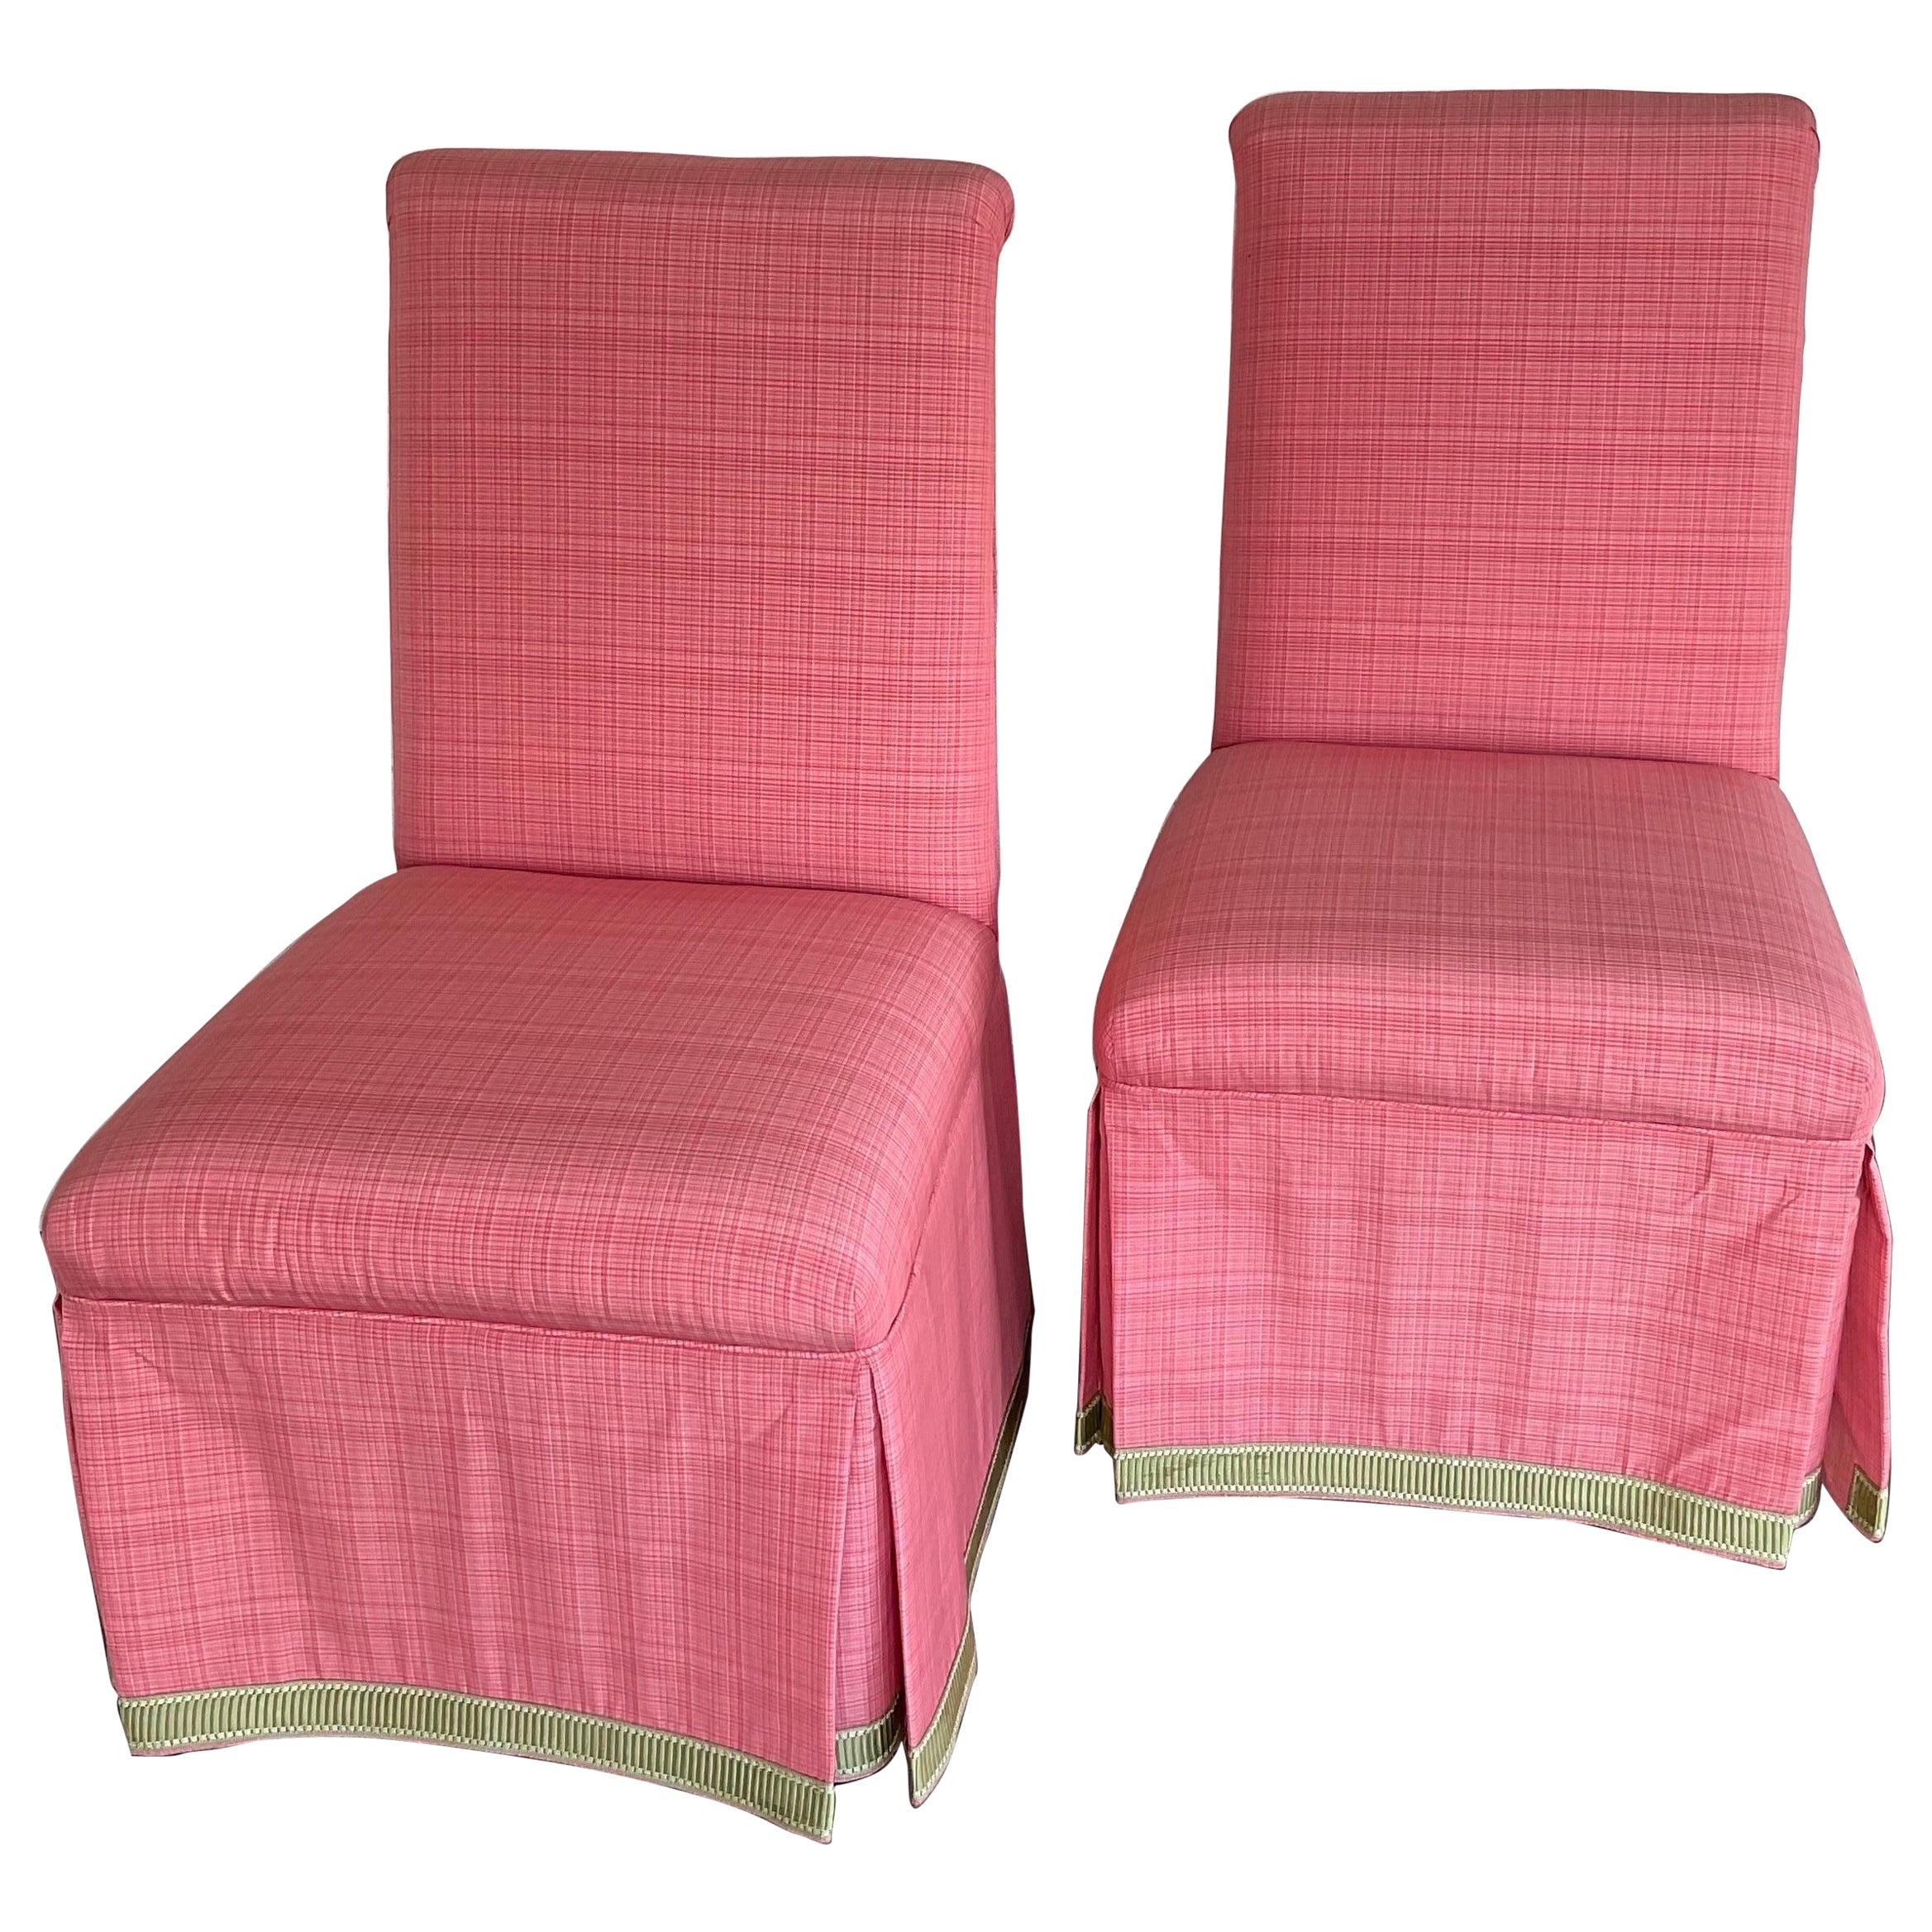 Lee Jofa Maßgefertigte Parsons-Stühle – ein Paar